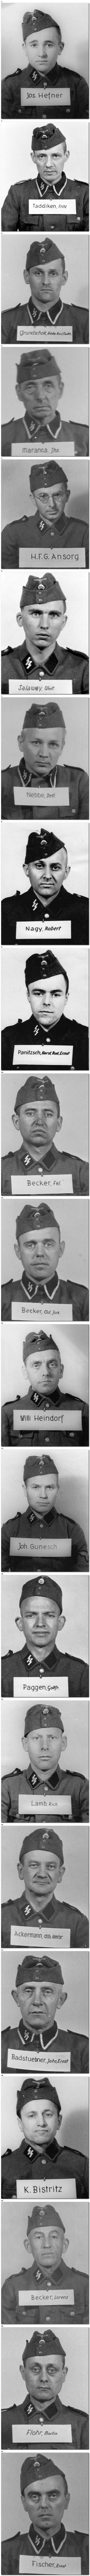 Gardes d'Auschwitz: les visages qui ont supervisé un génocide, 1940-1945